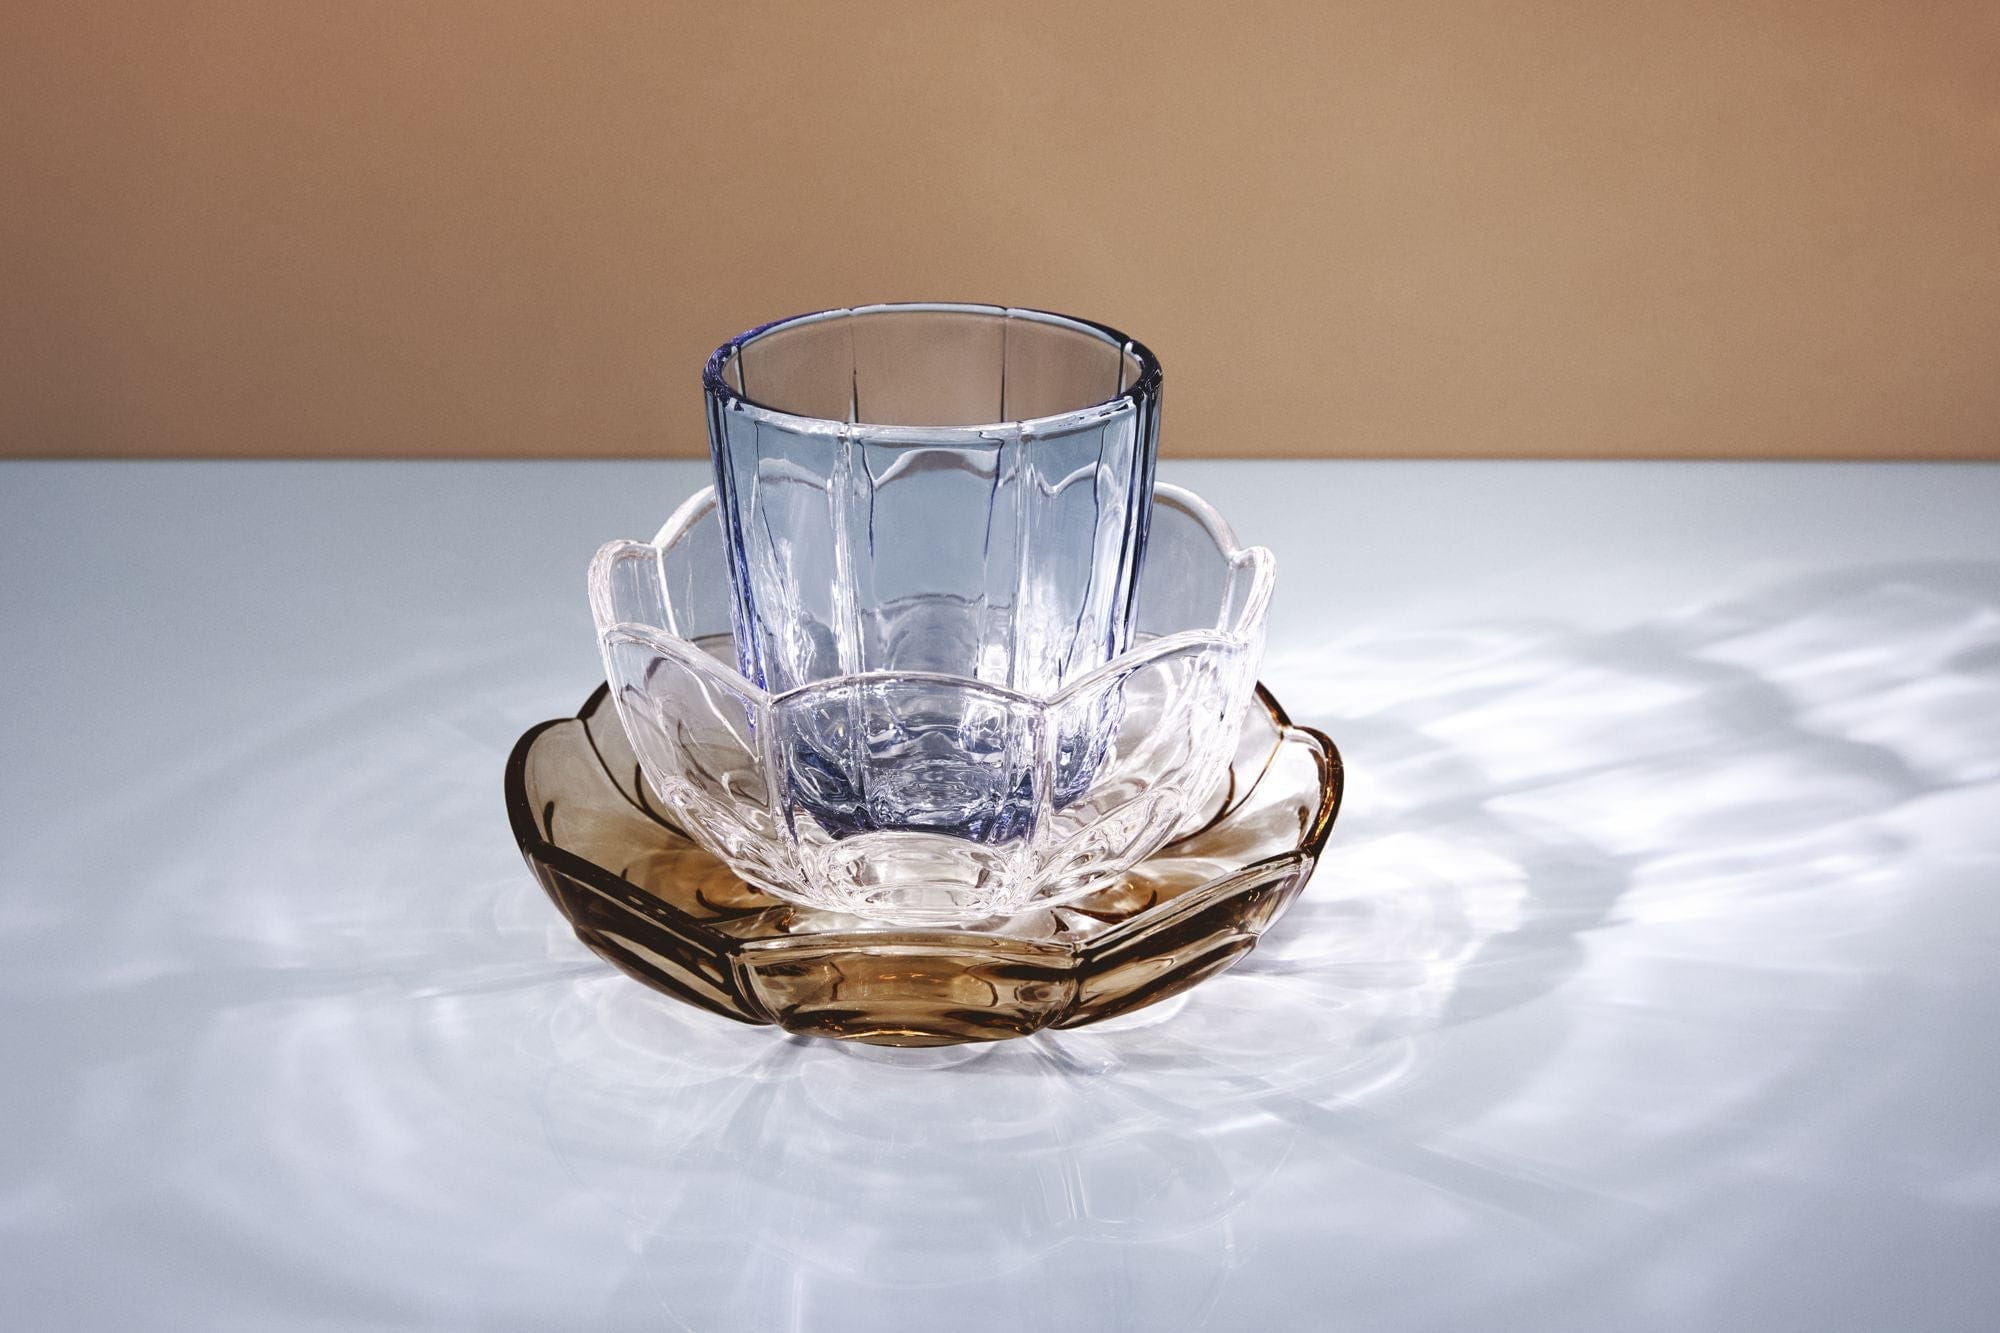 Holmegaard Lily vandglas sæt på 2 320 ml, blåt